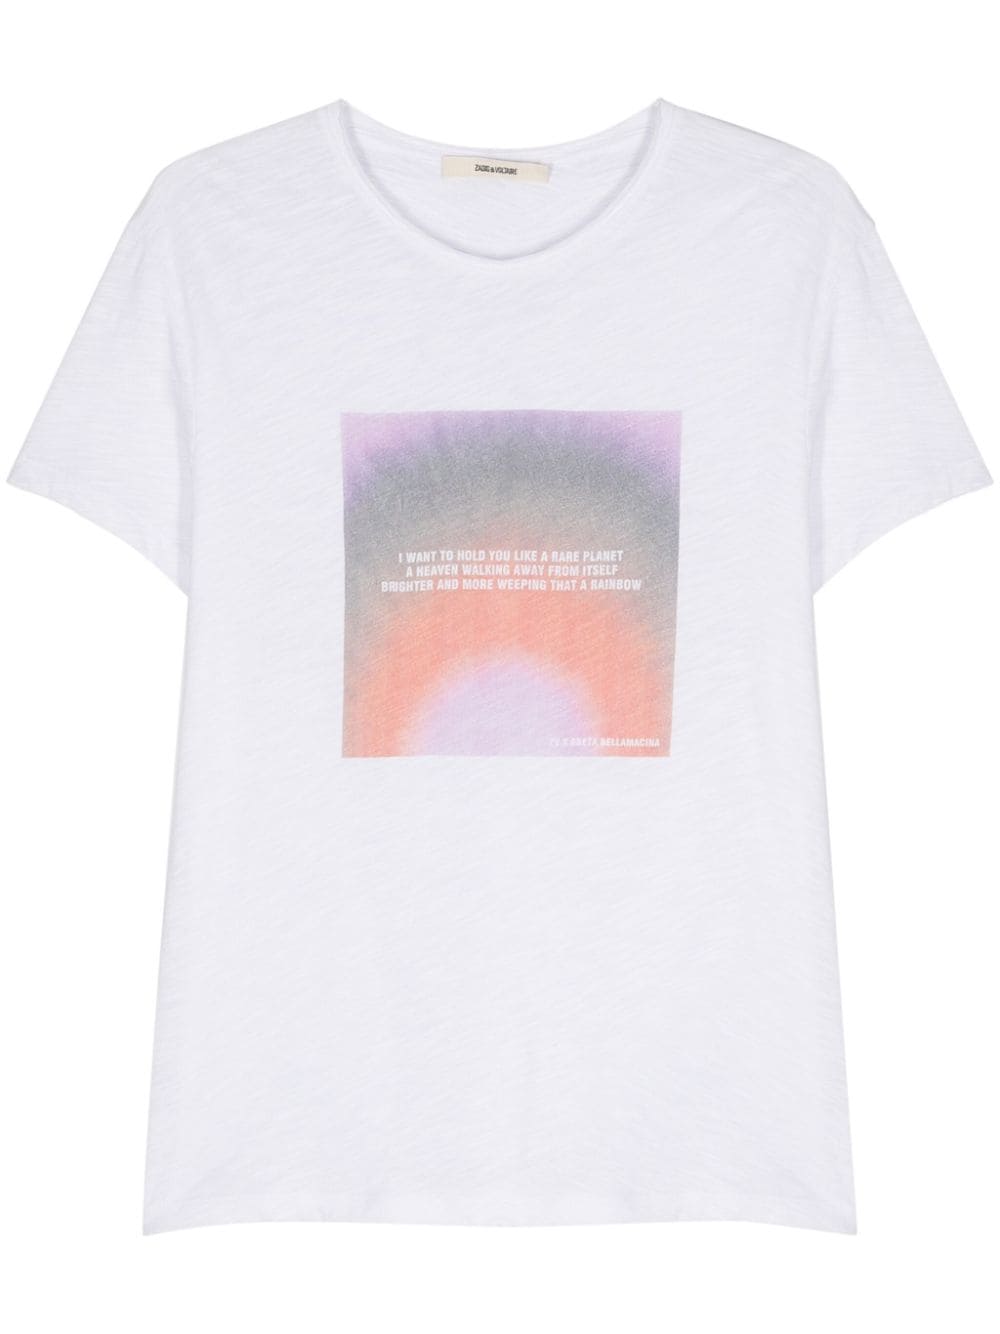 Zadig&Voltaire x Greta Bellamacina Toby photoprint T-shirt - White von Zadig&Voltaire